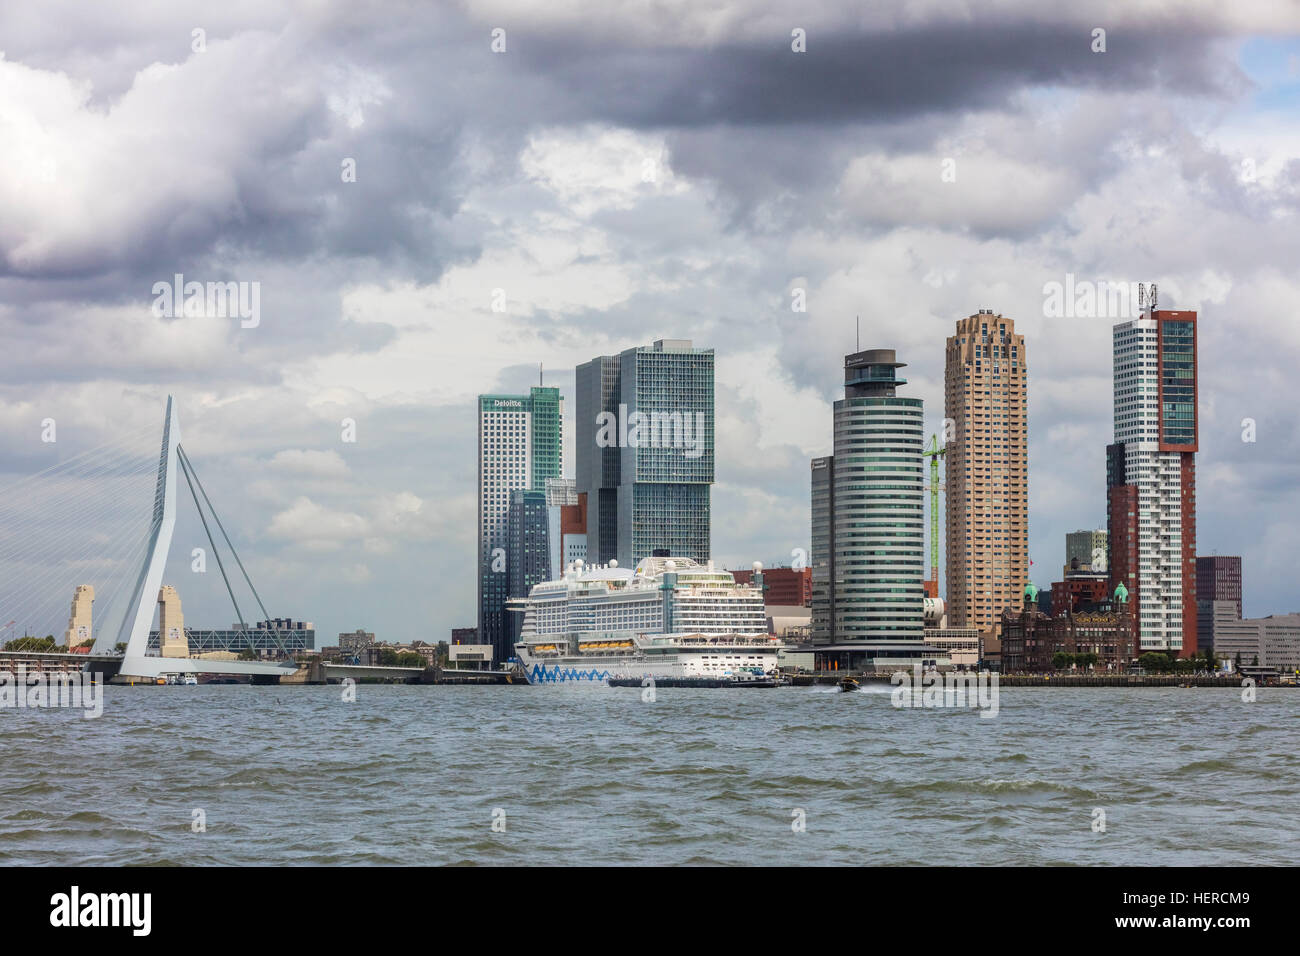 Skyline und den Hafen in Rotterdam, Skyline, Hochhäuser, Architektur, Hochhaus, Wasser, Aida, Kreuzfahrt Schiff, Kreuzfahrt, Erasmus-Brücke Stockfoto